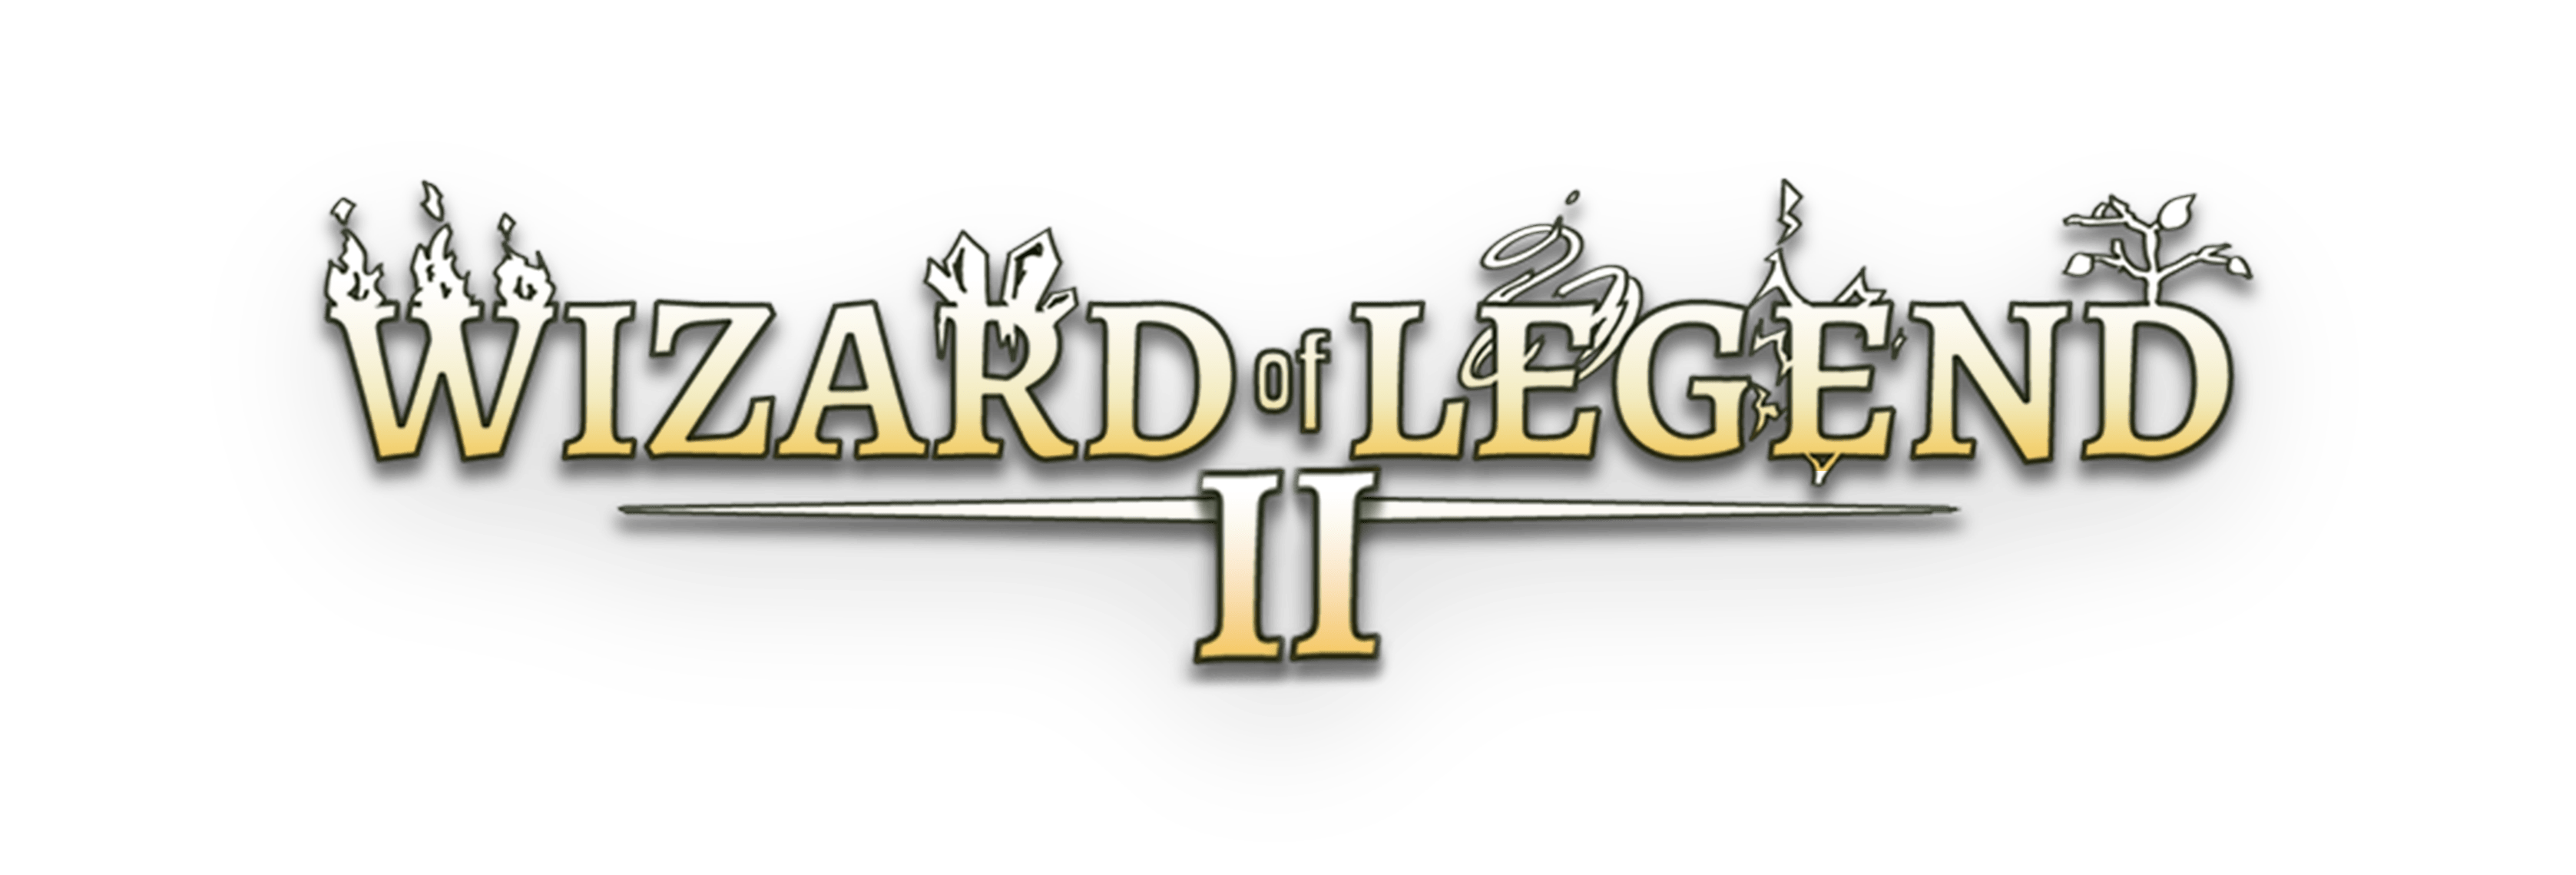 Wizard Of Legend II 2023 05 18 23 012 